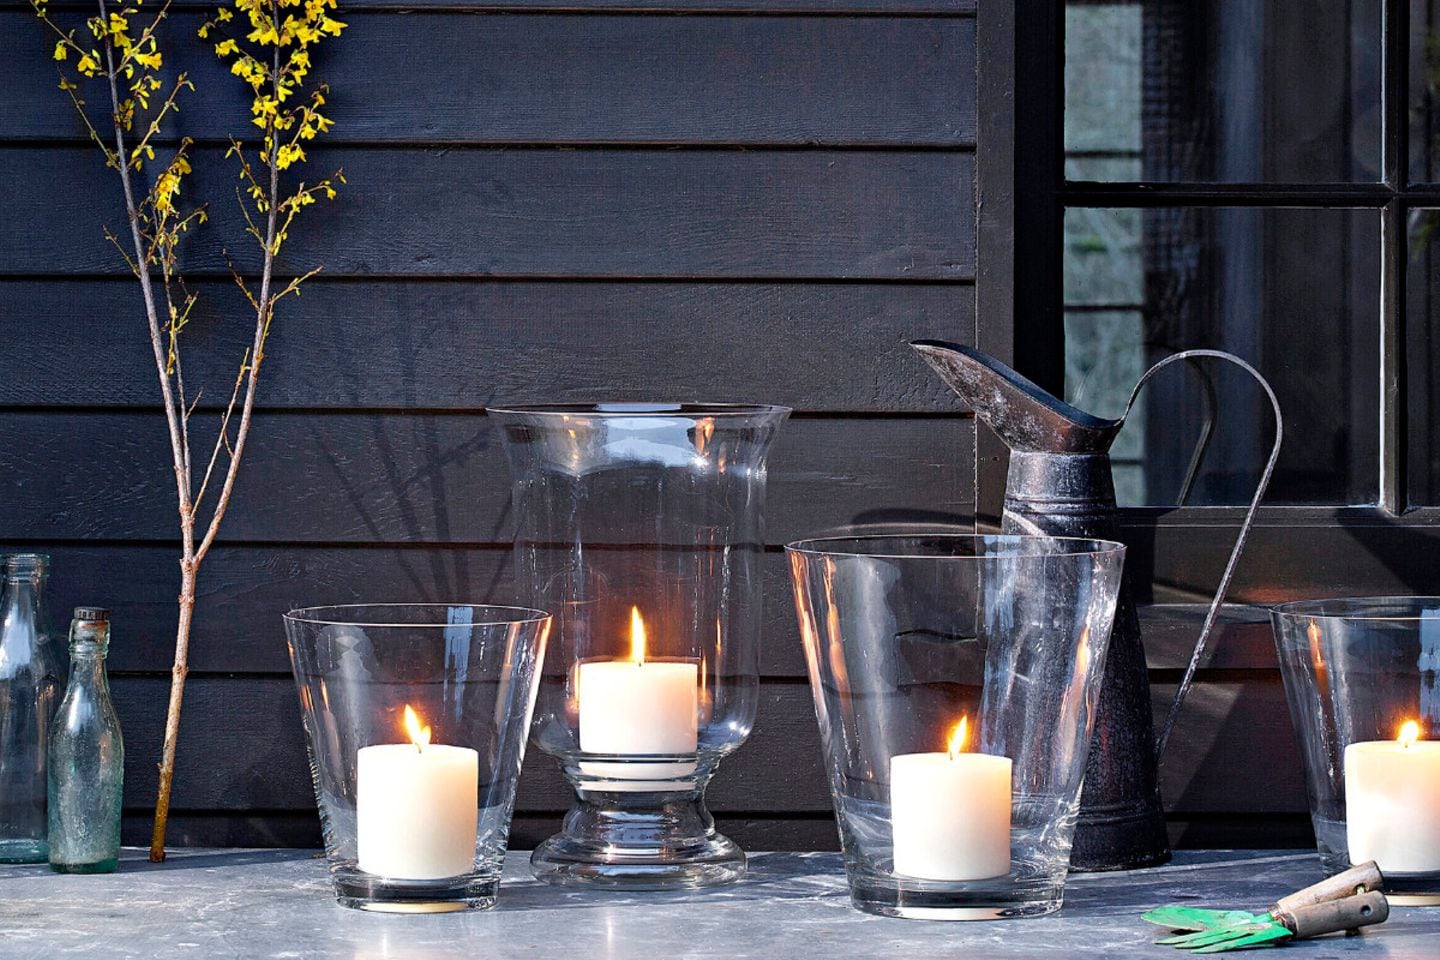 Gartentisch mit vier Kerzen in Vasen als Windlichter vor einer hölzernen Hauswand